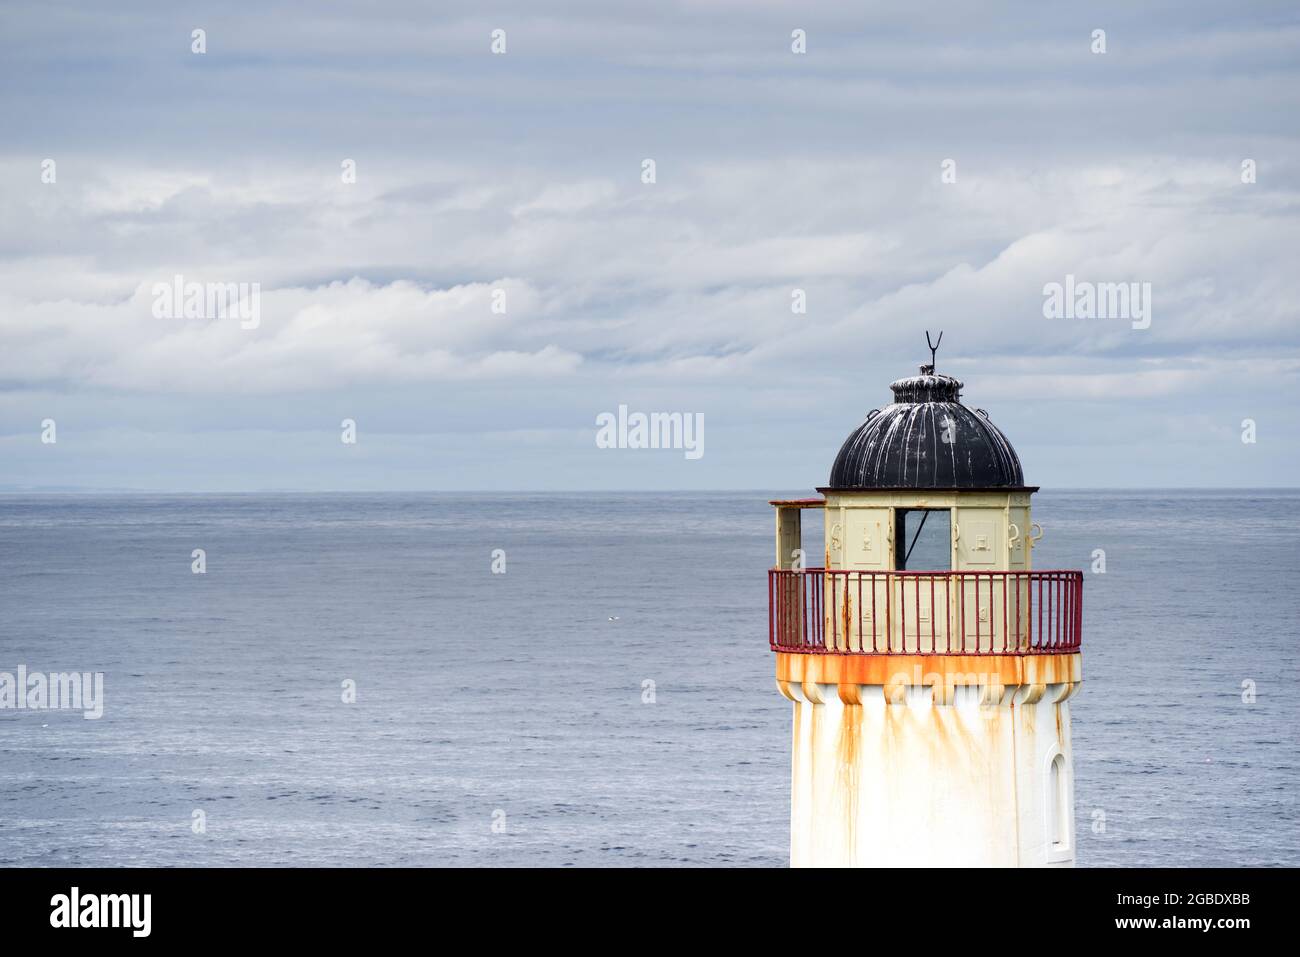 Se desutilizó el faro Low Light en la Isla de Mayo - Escocia Foto de stock